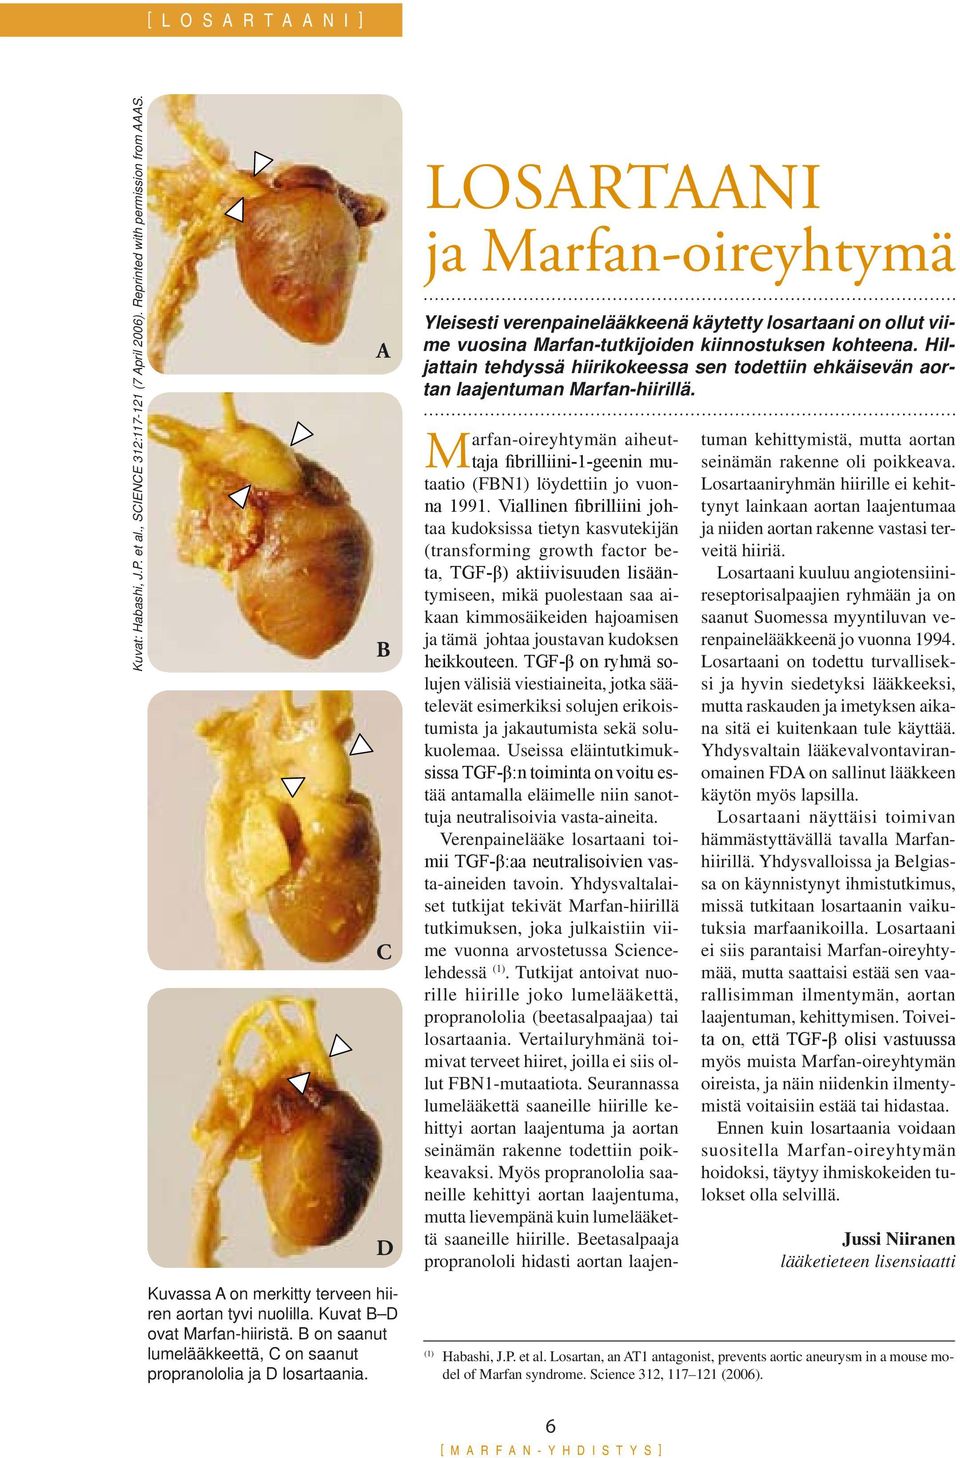 Hiljattain tehdyssä hiirikokeessa sen todettiin ehkäisevän aortan laajentuman Marfan-hiirillä. Marfan-oireyhtymän aiheuttaja fibrilliini-1-geenin mutaatio (FBN1) löydettiin jo vuonna 1991.